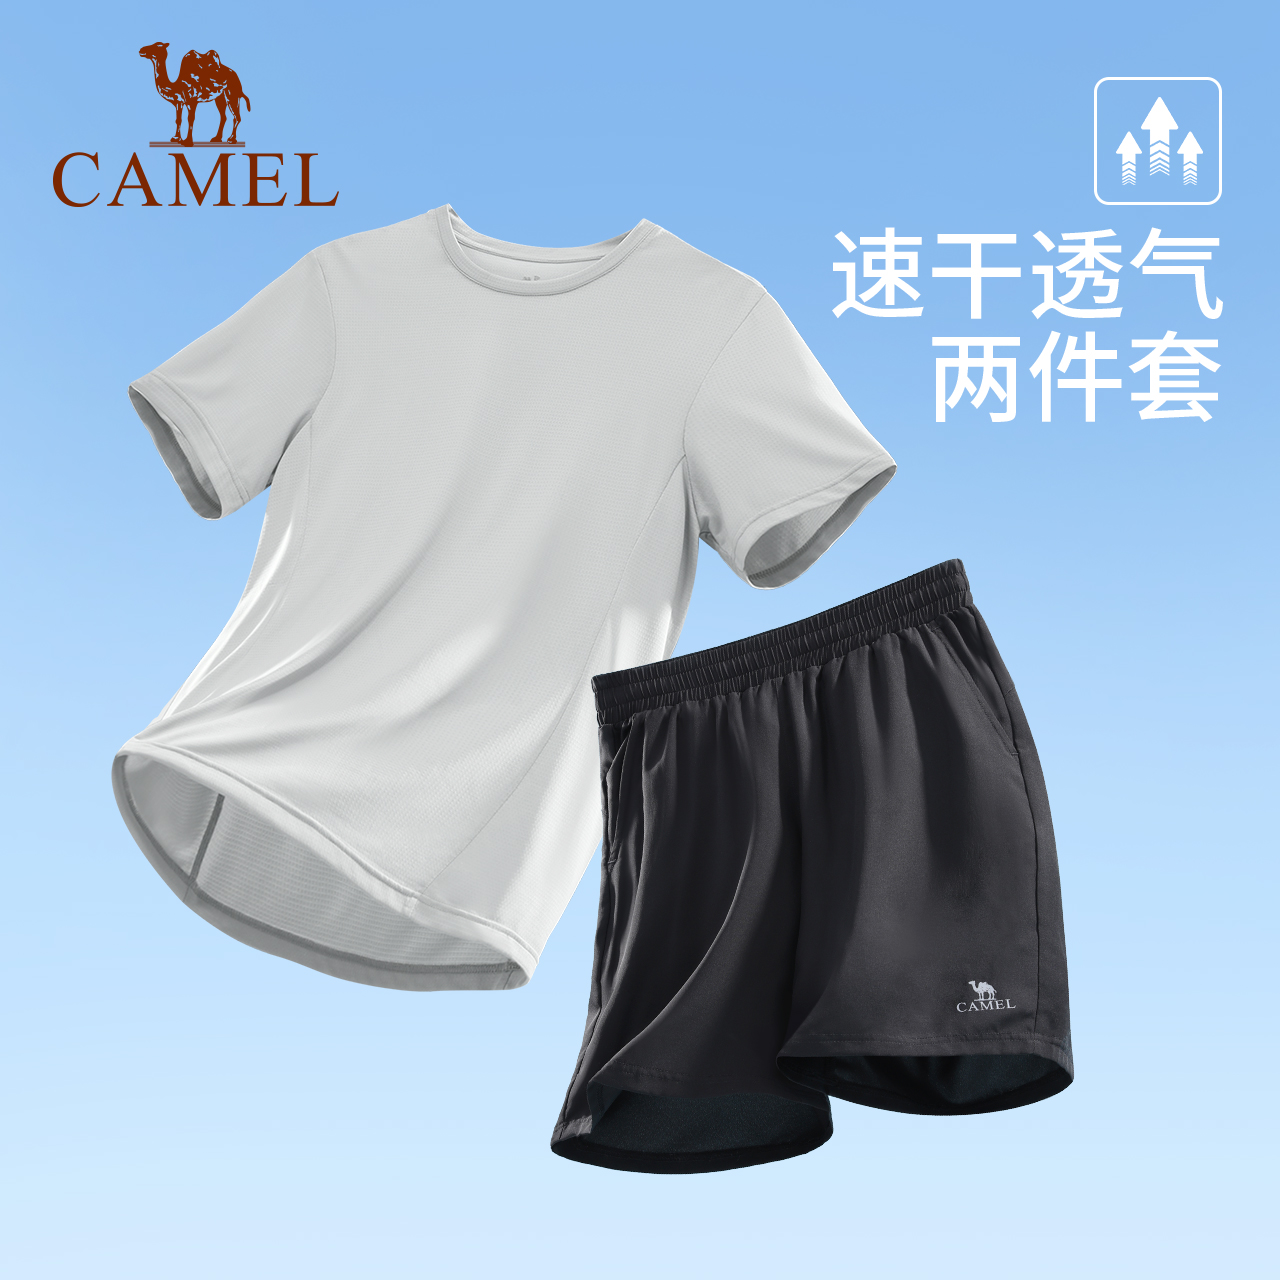 骆驼速干运动套装夏季透气短裤情侣健身服两件套瑜伽服晨跑短袖女 - 图2